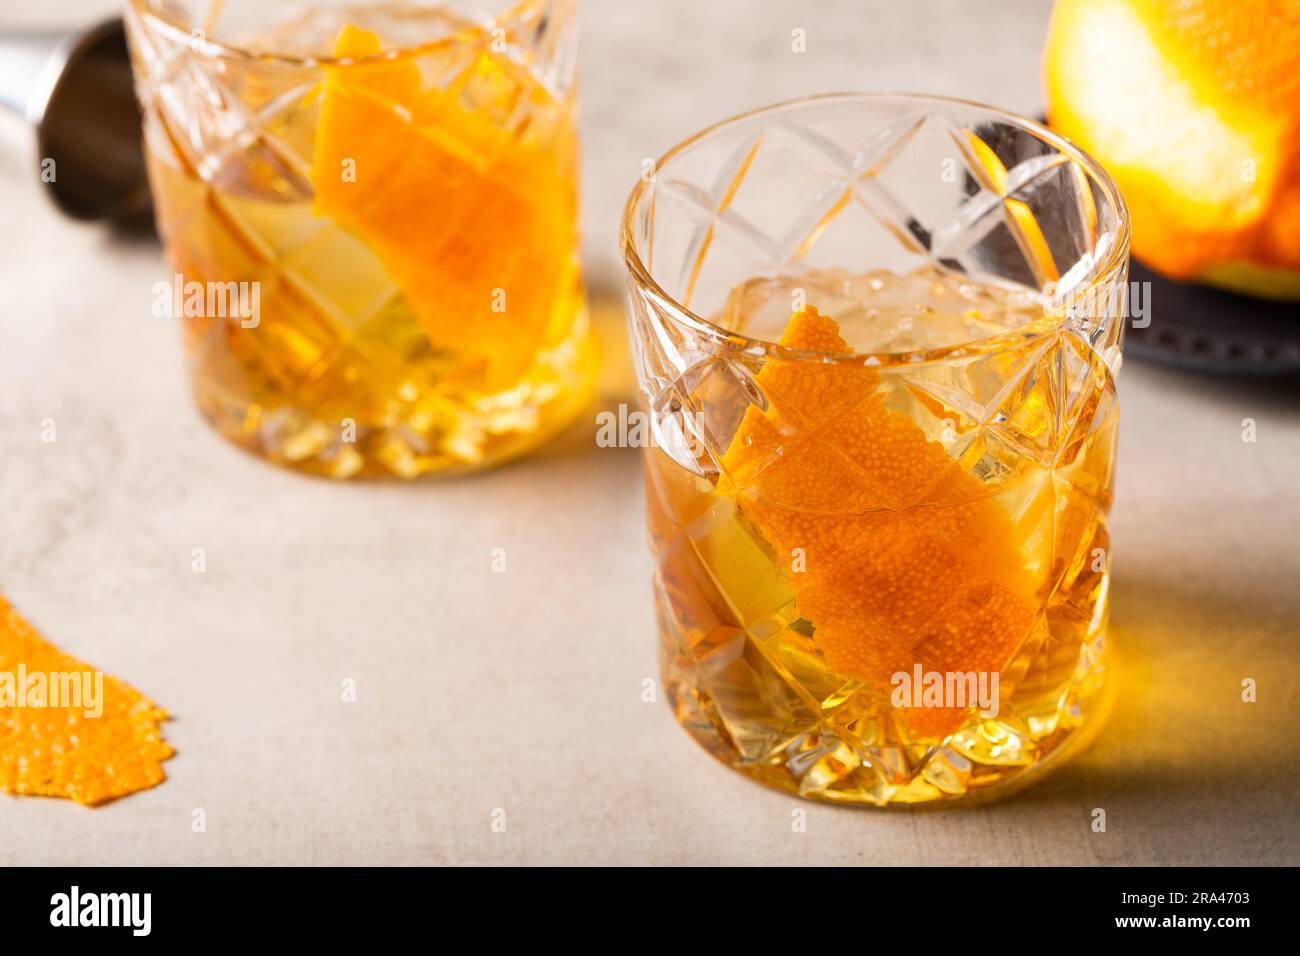 Whisky bourbon, sucre cube et amers aromatiques, garnissez d'une peau d'orange Banque D'Images